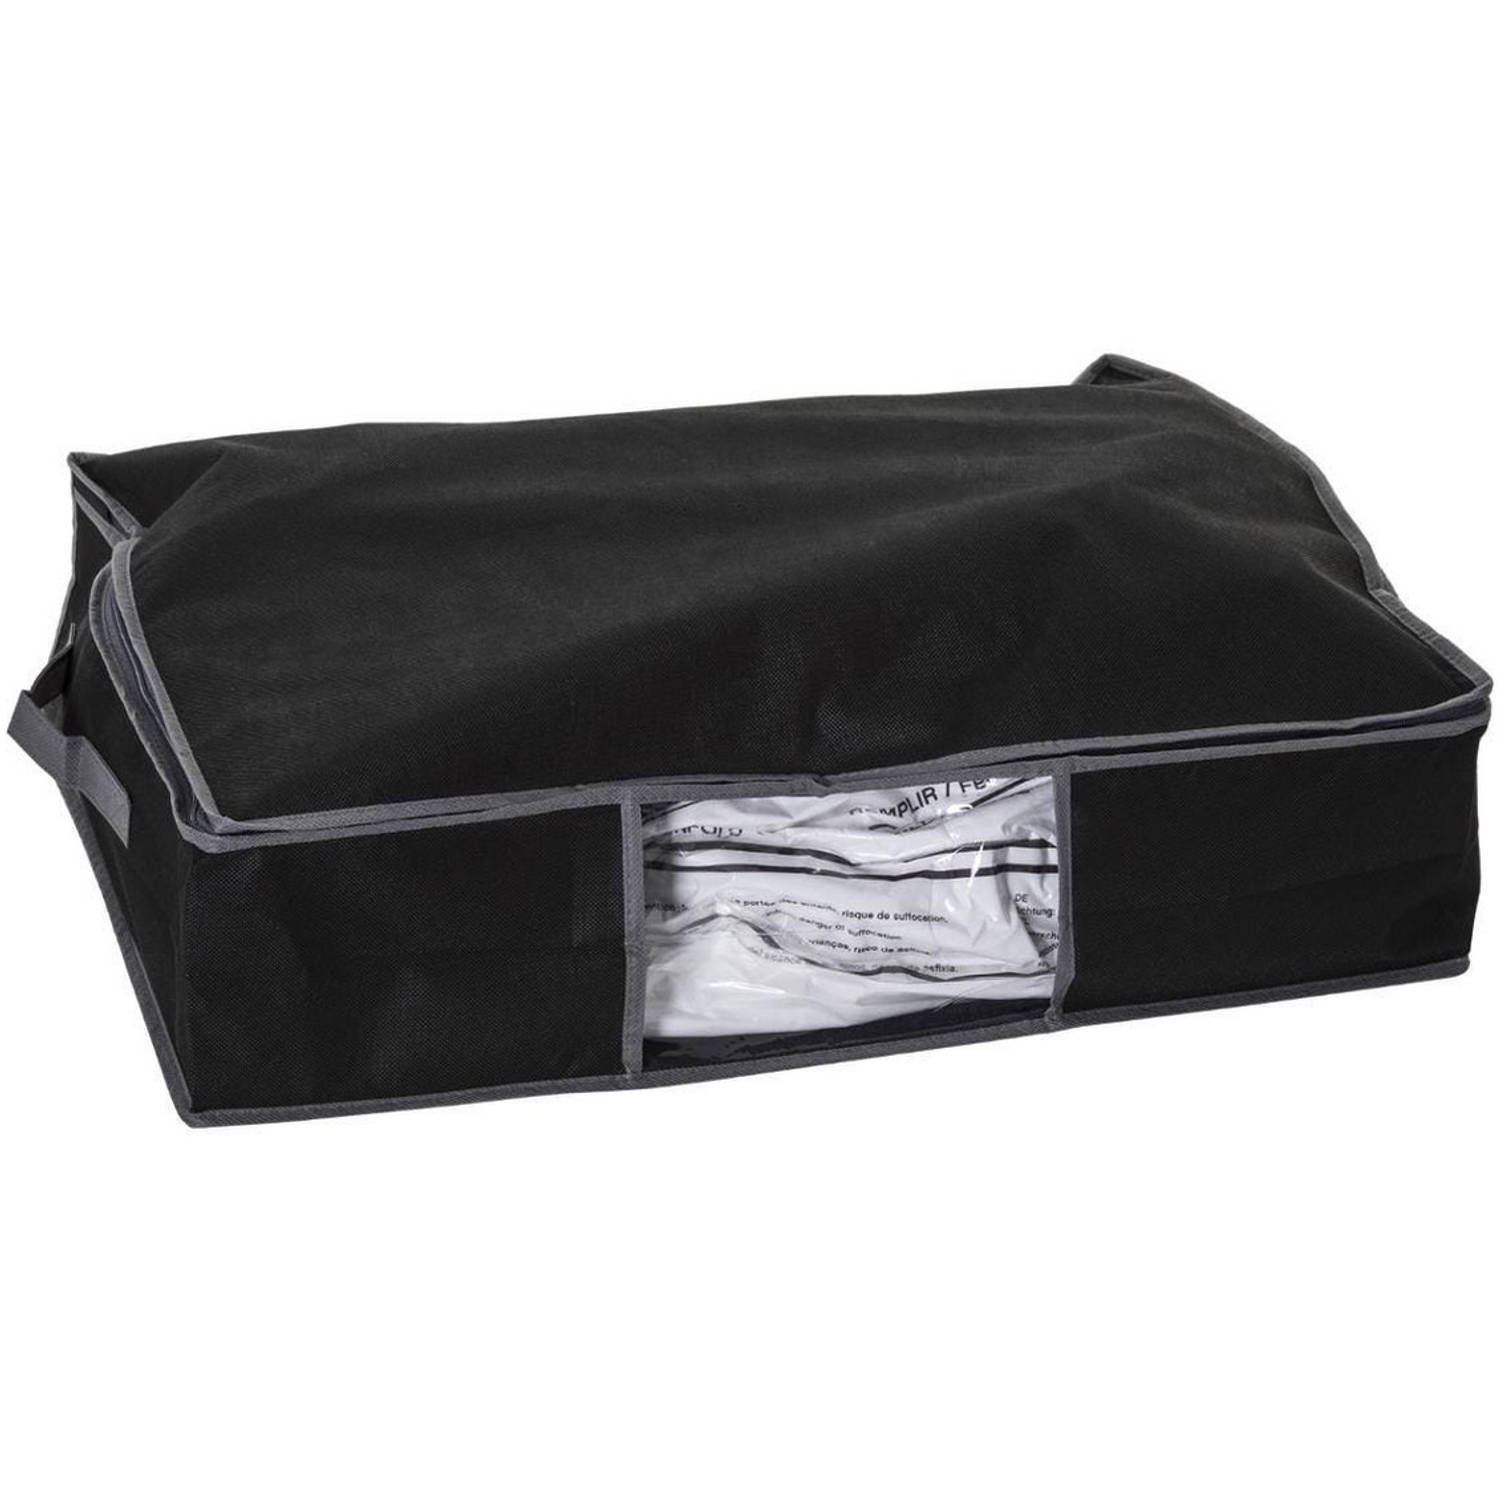 Dekbed-kussen opberghoes zwart met vacuumzak 60 x 45 x 15 cm Opberghoezen